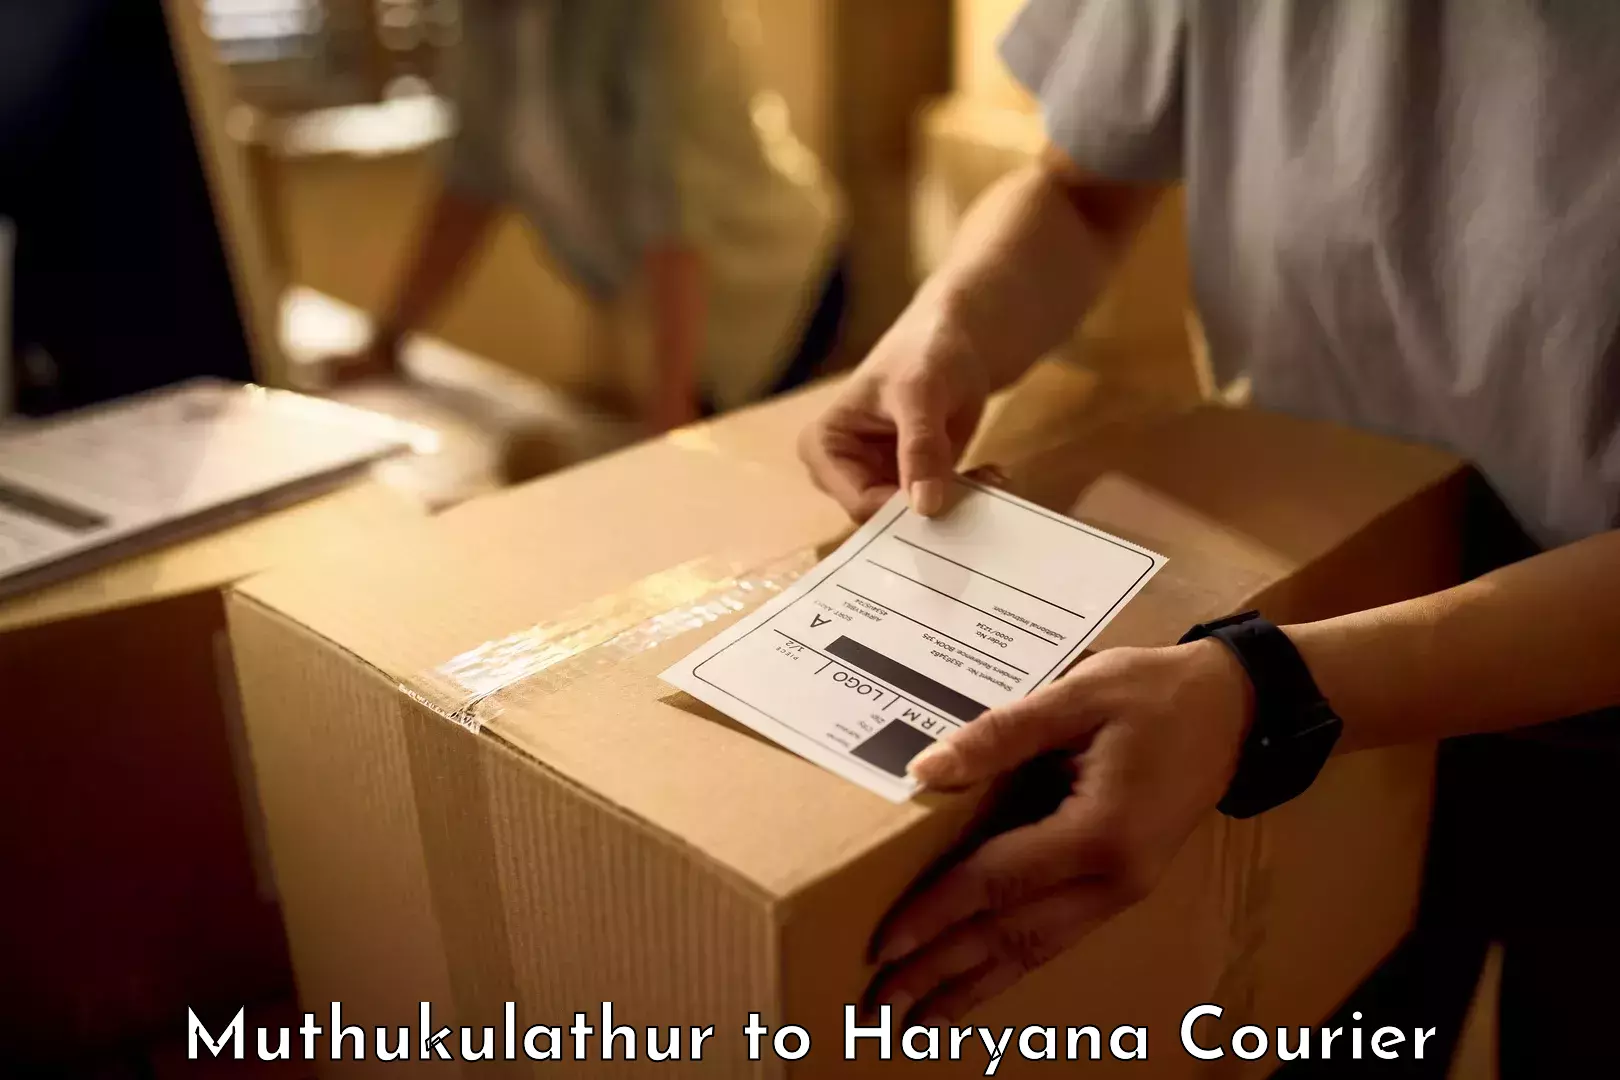 Luggage delivery network Muthukulathur to NIT Kurukshetra